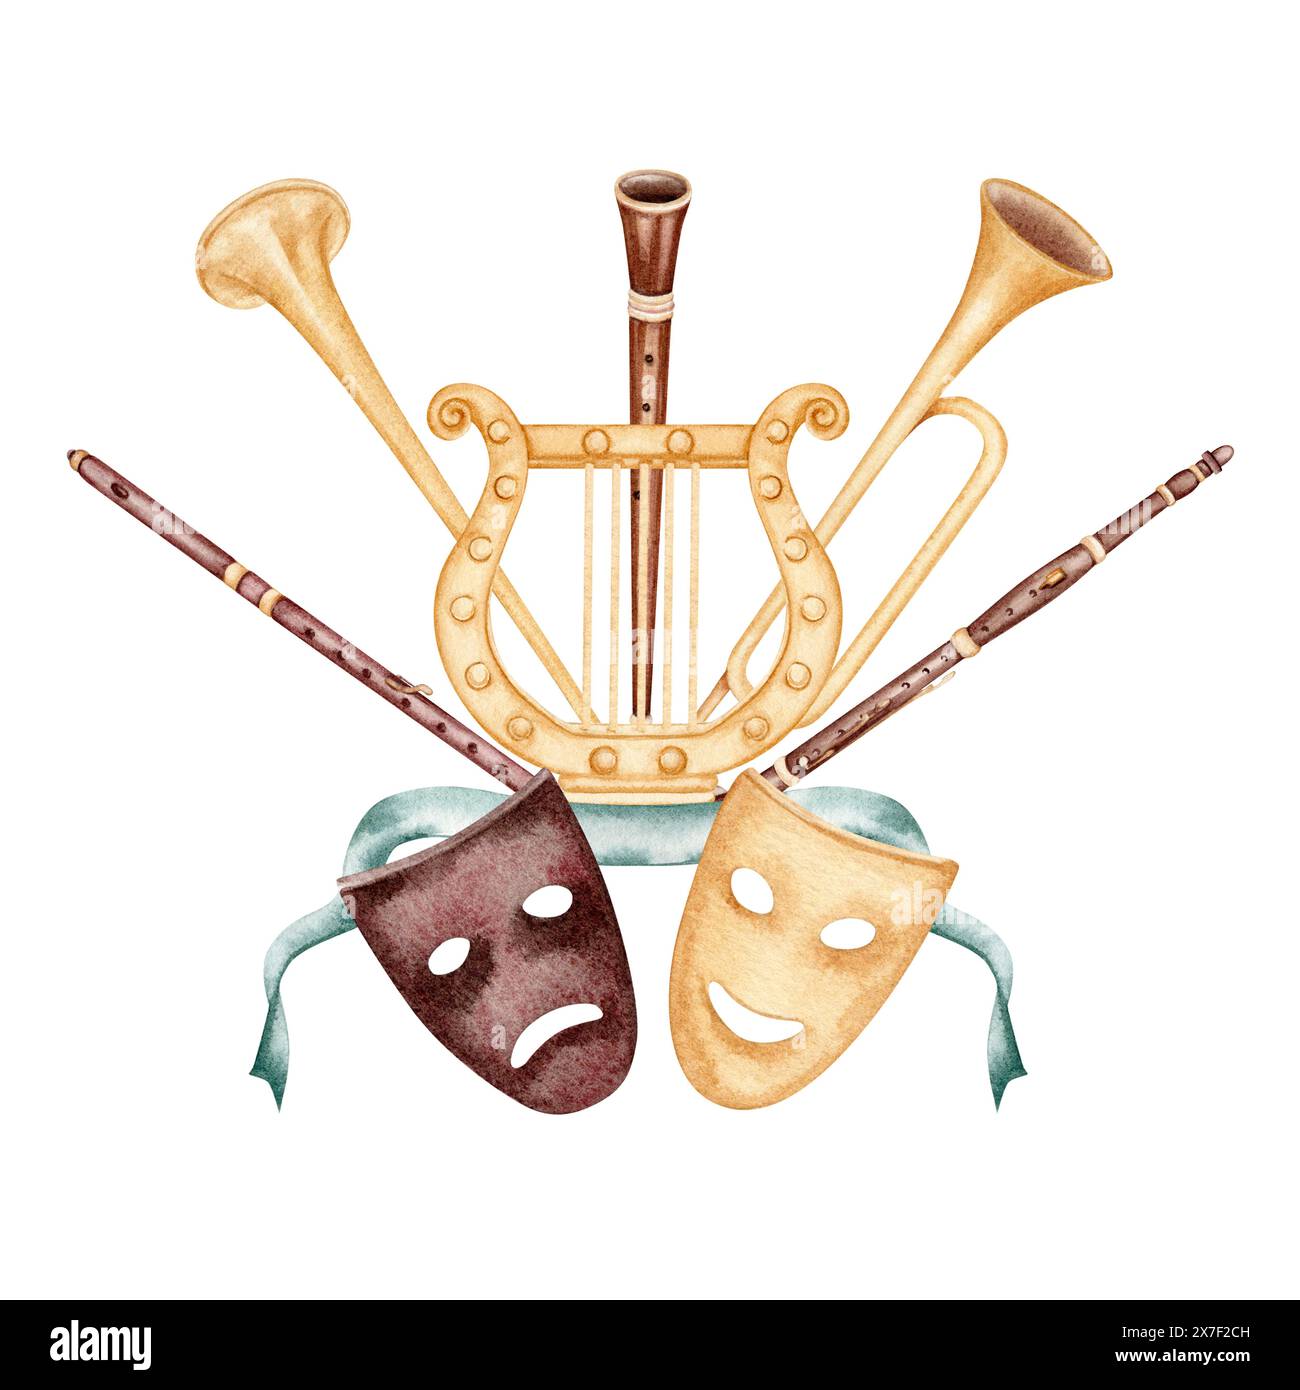 Klassische Musikinstrumente mit Theatermasken und alter Harfe. Handgezeichnete Aquarellillustration isoliert auf weißem Hintergrund. Zum Spielen, zur Oper Stockfoto